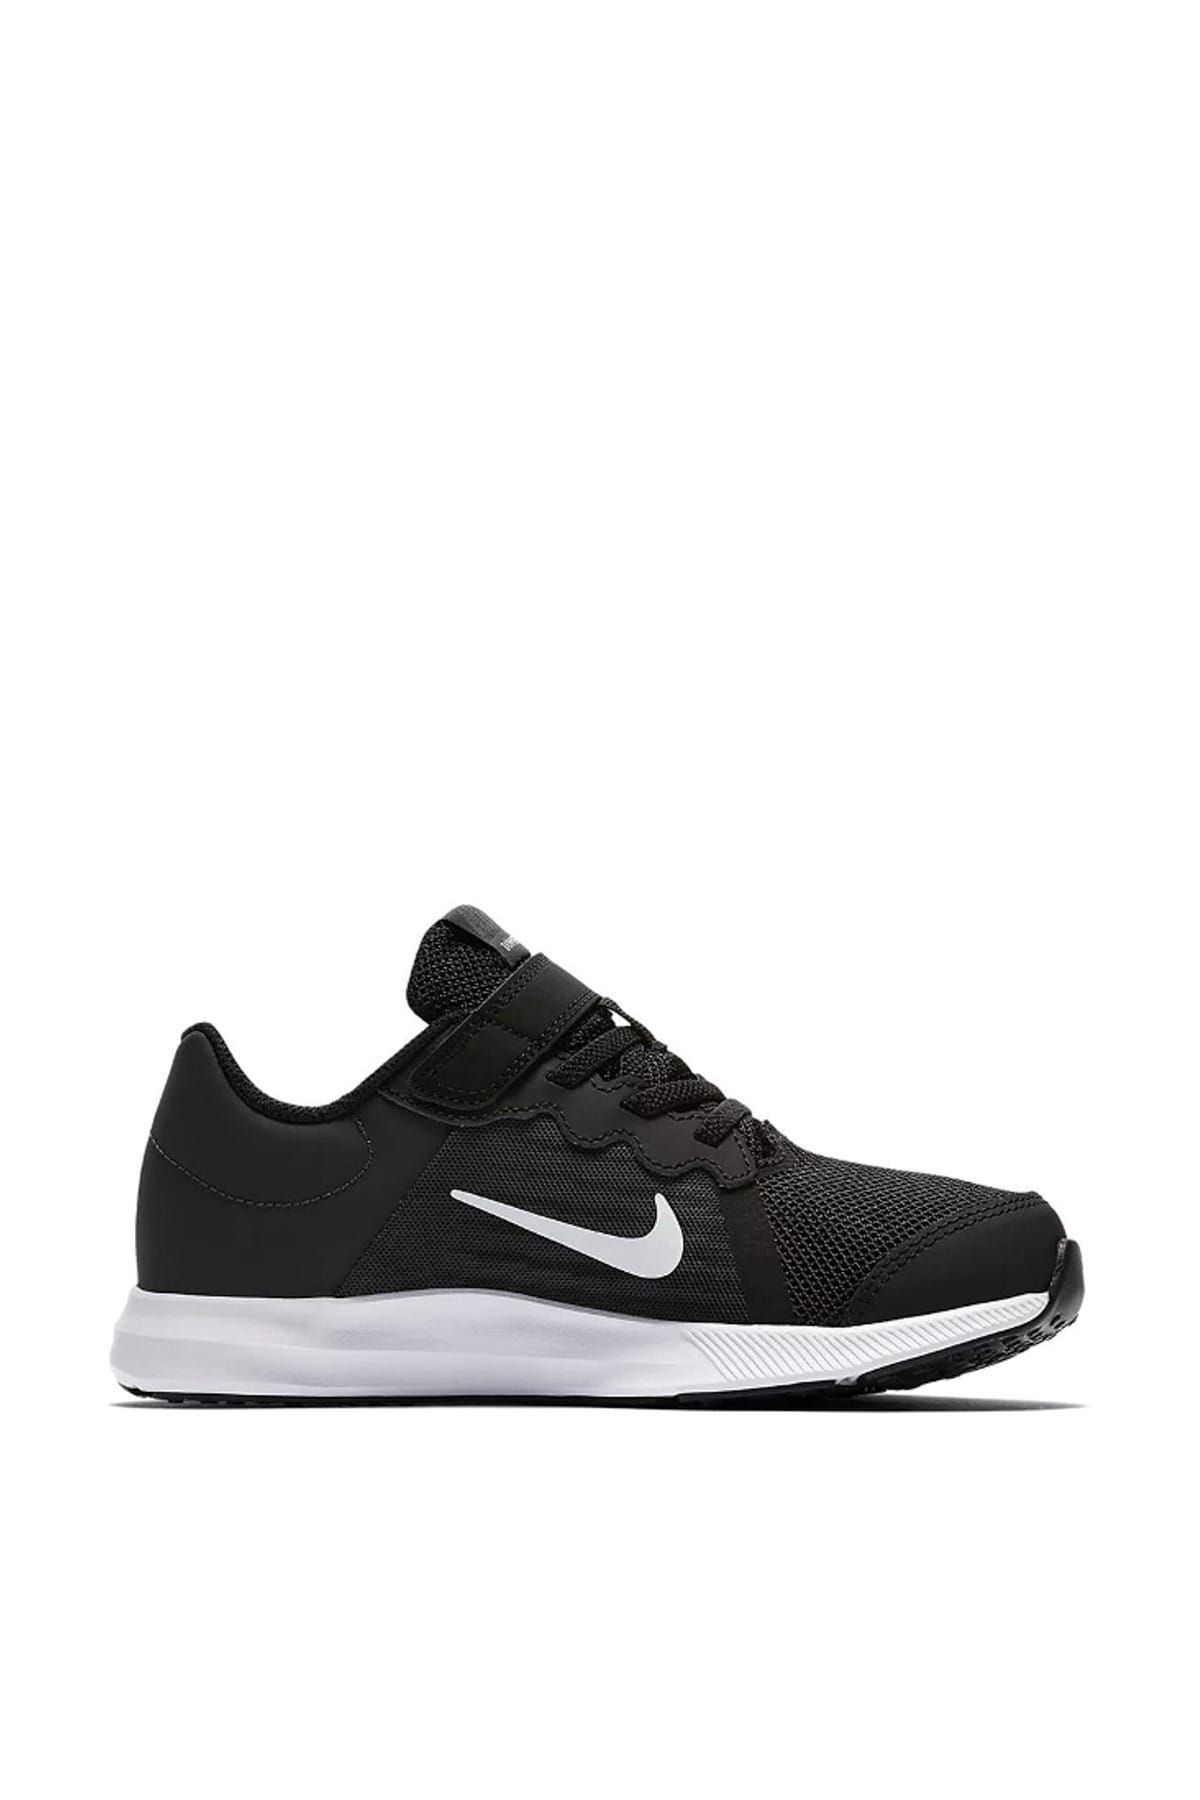 Nike 922854-001 Downshifter 8 Küçük Koşu Ayakkabısı